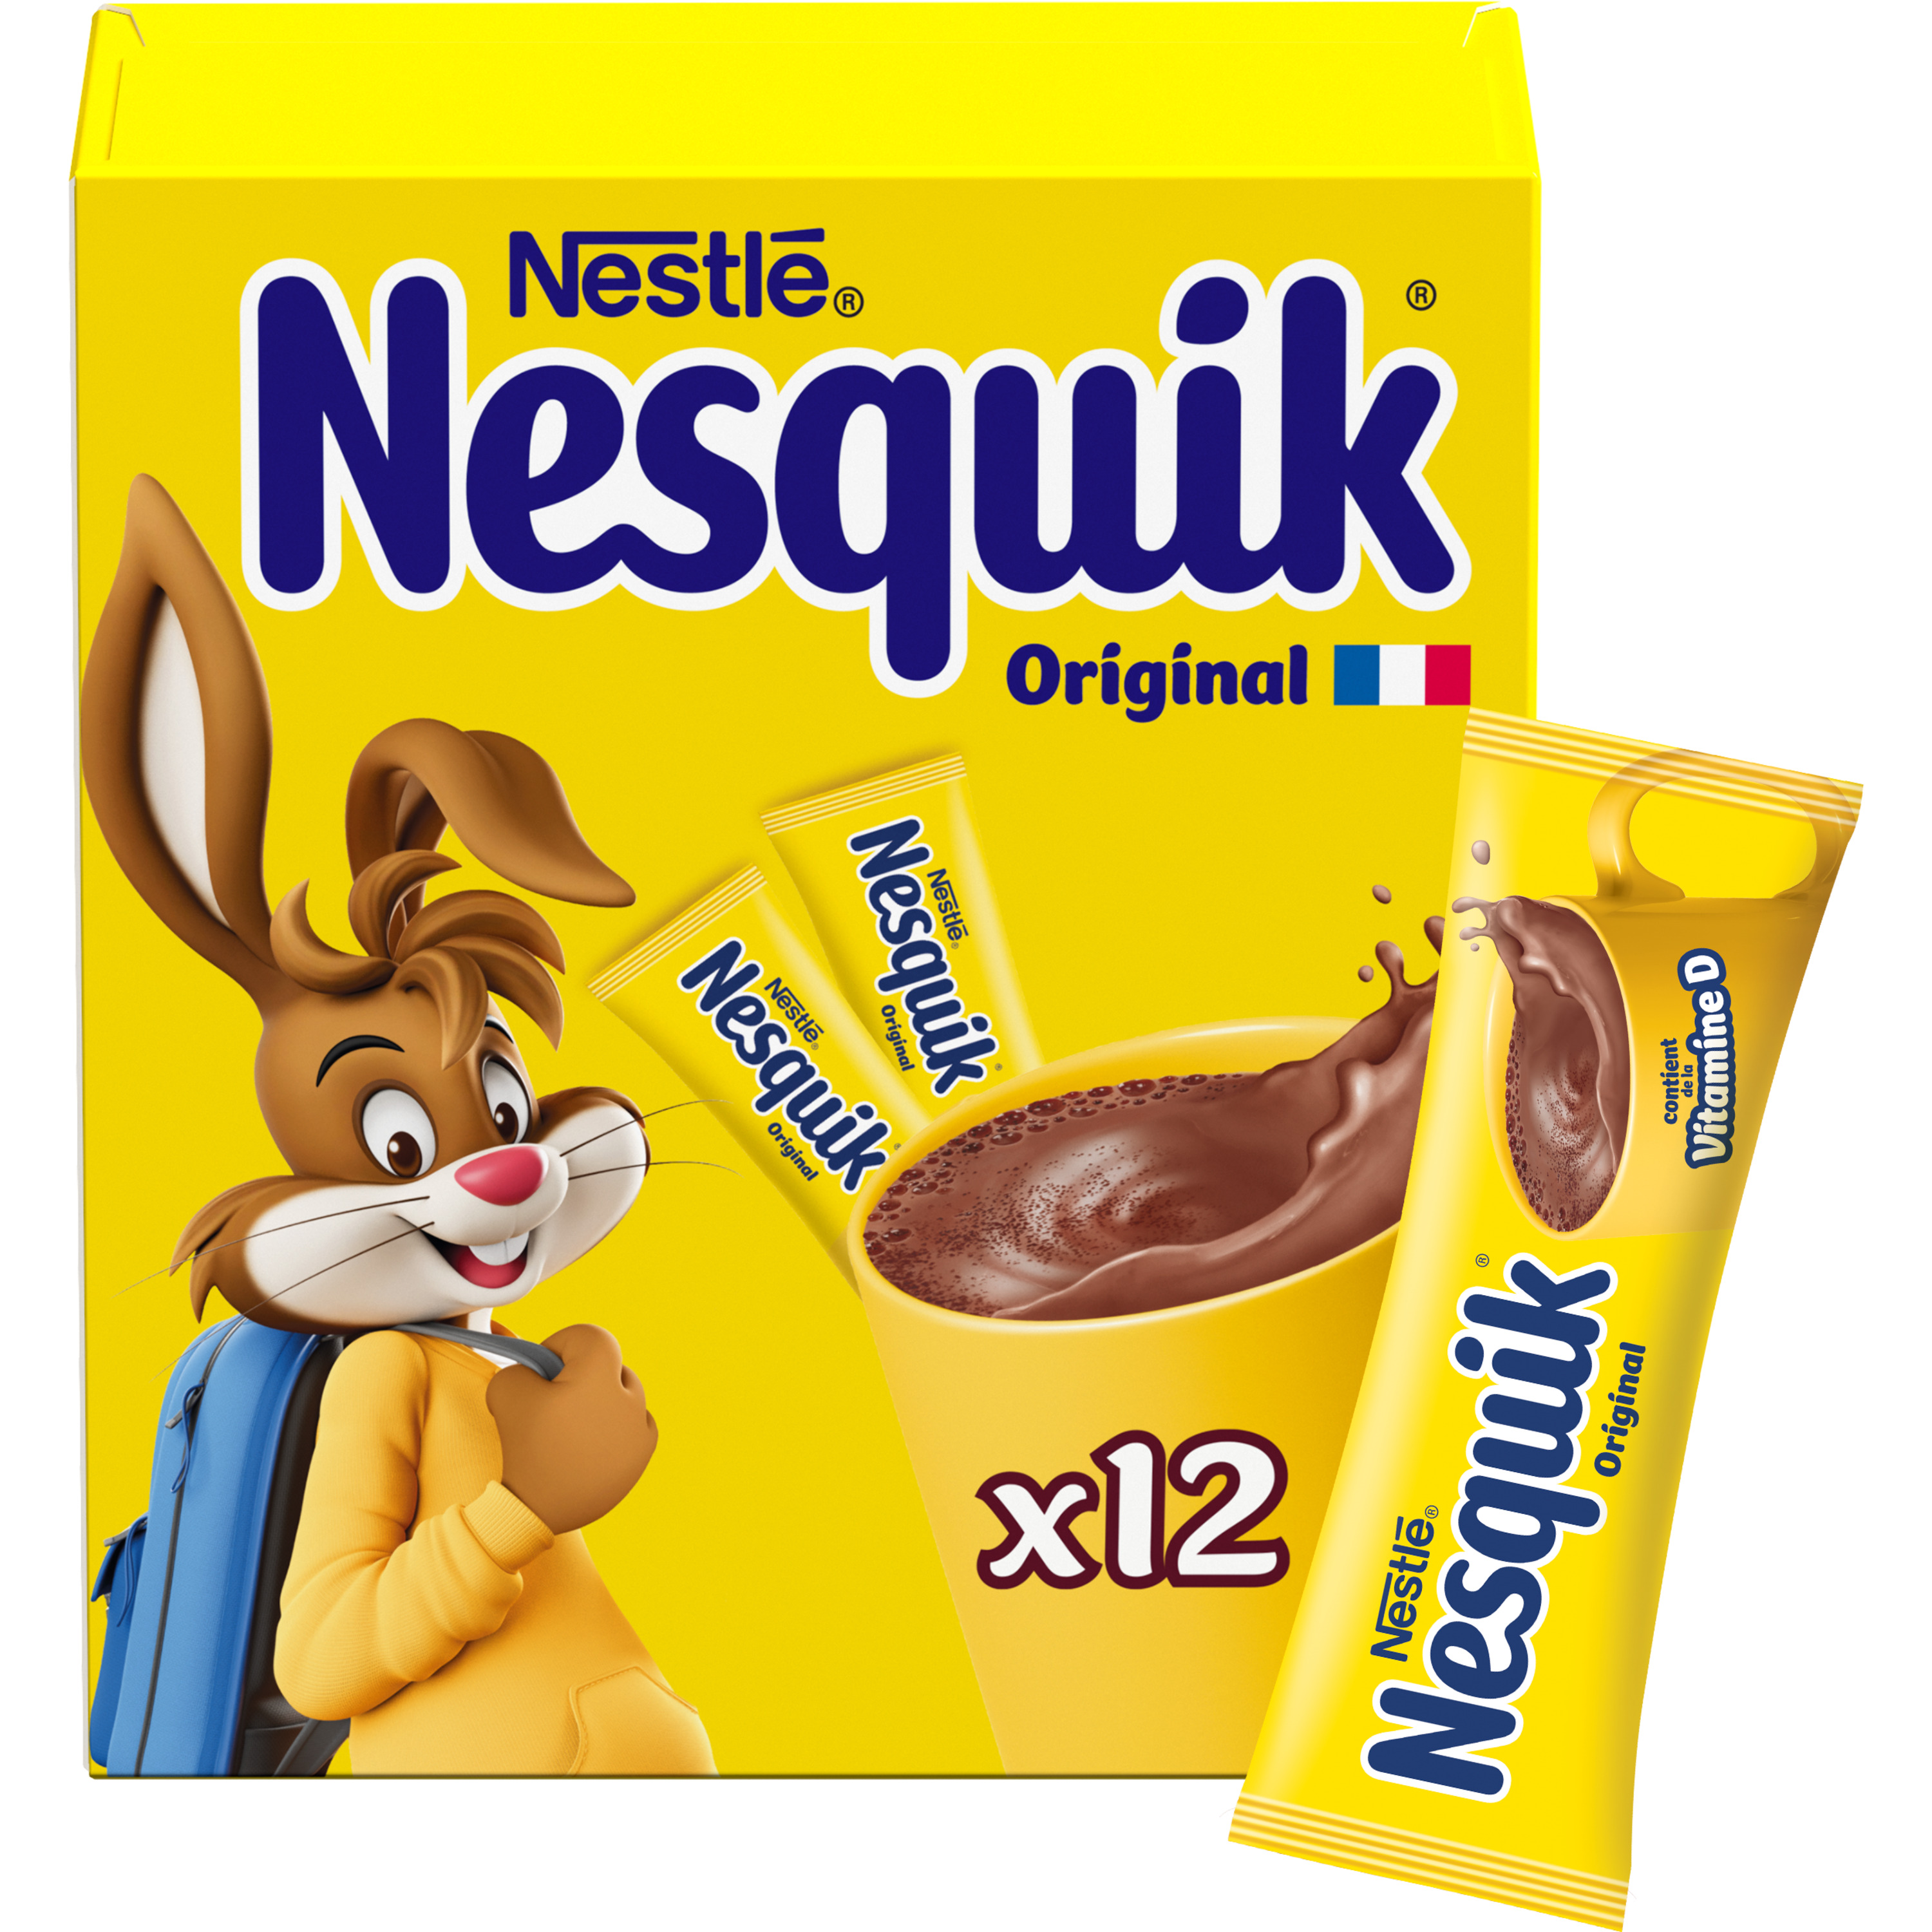 Nesquik Chocolat Chaud en Poudre déjà lacté 240 dosettes individuelles